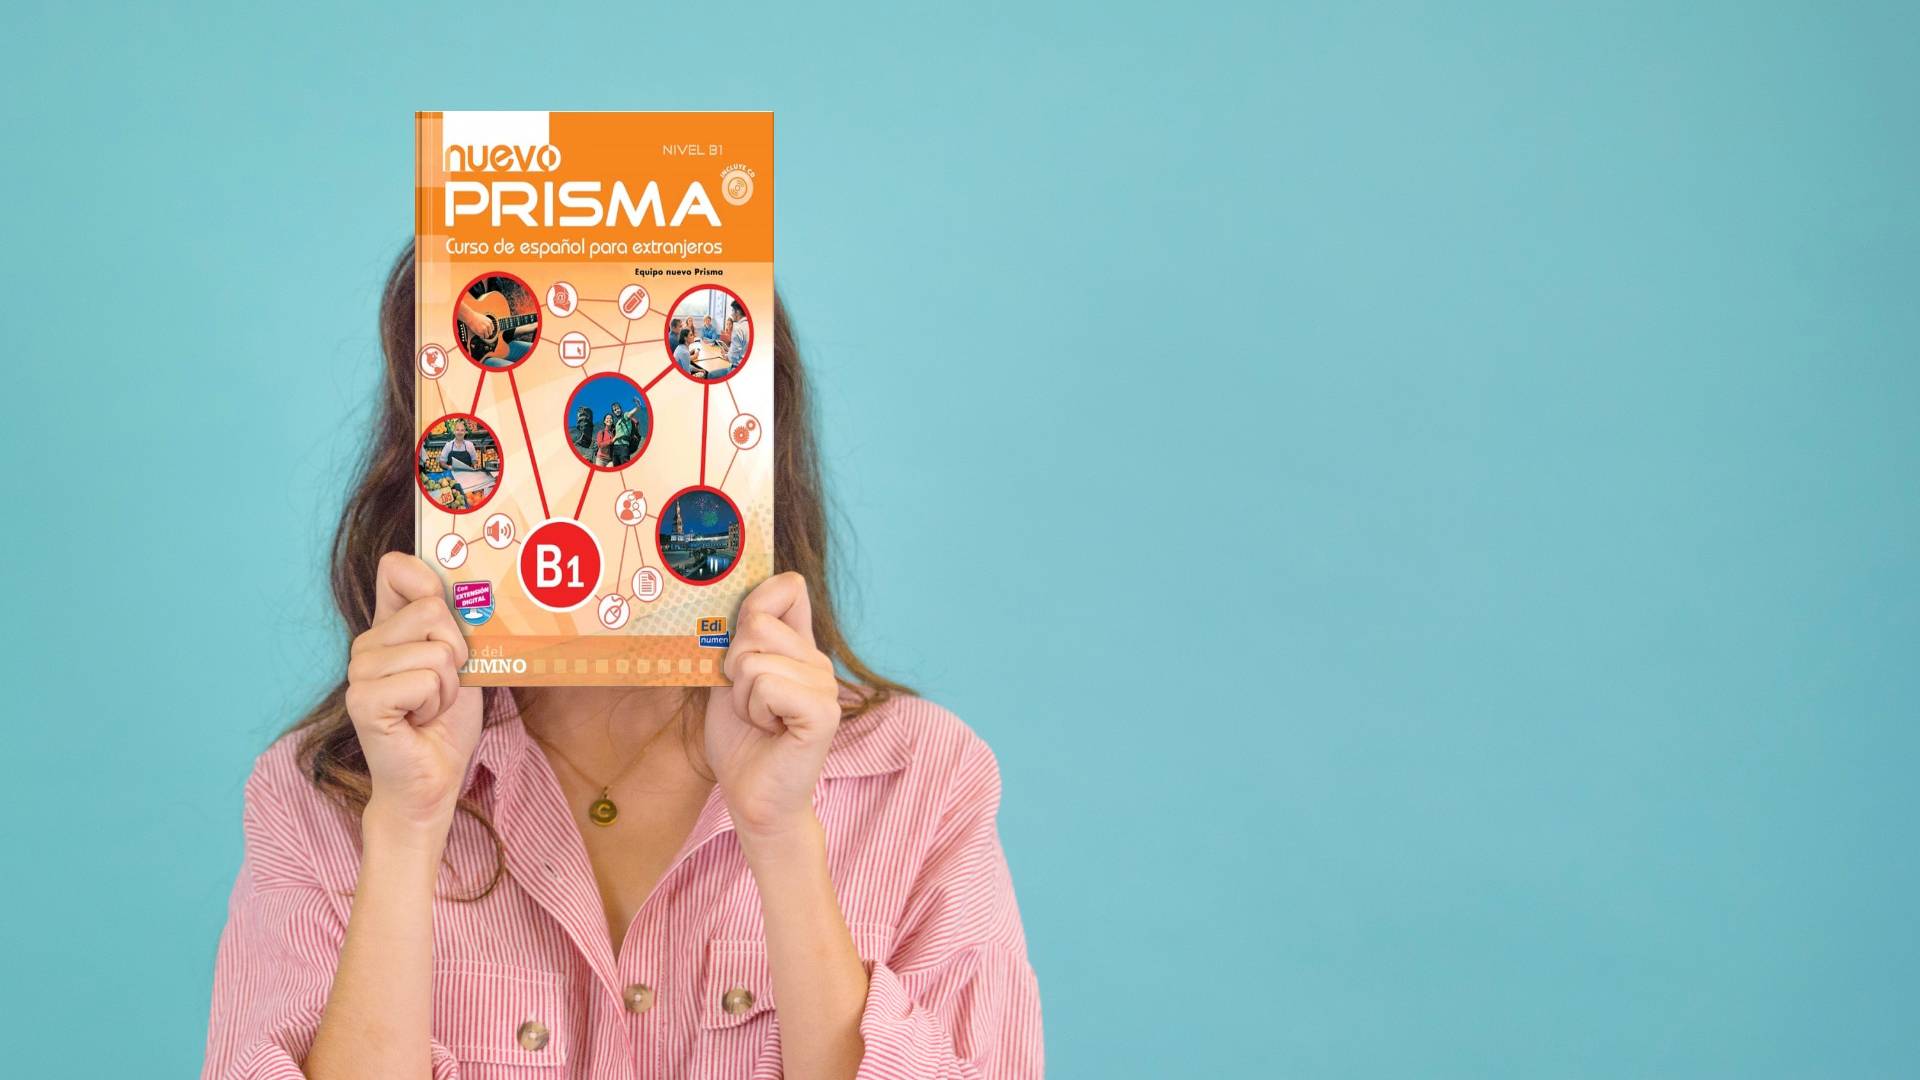 خرید کتاب زبان اسپانیایی | فروشگاه اینترنتی کتاب زبان اسپانیایی | Nuevo Prisma B1 | نوو پریزما سه